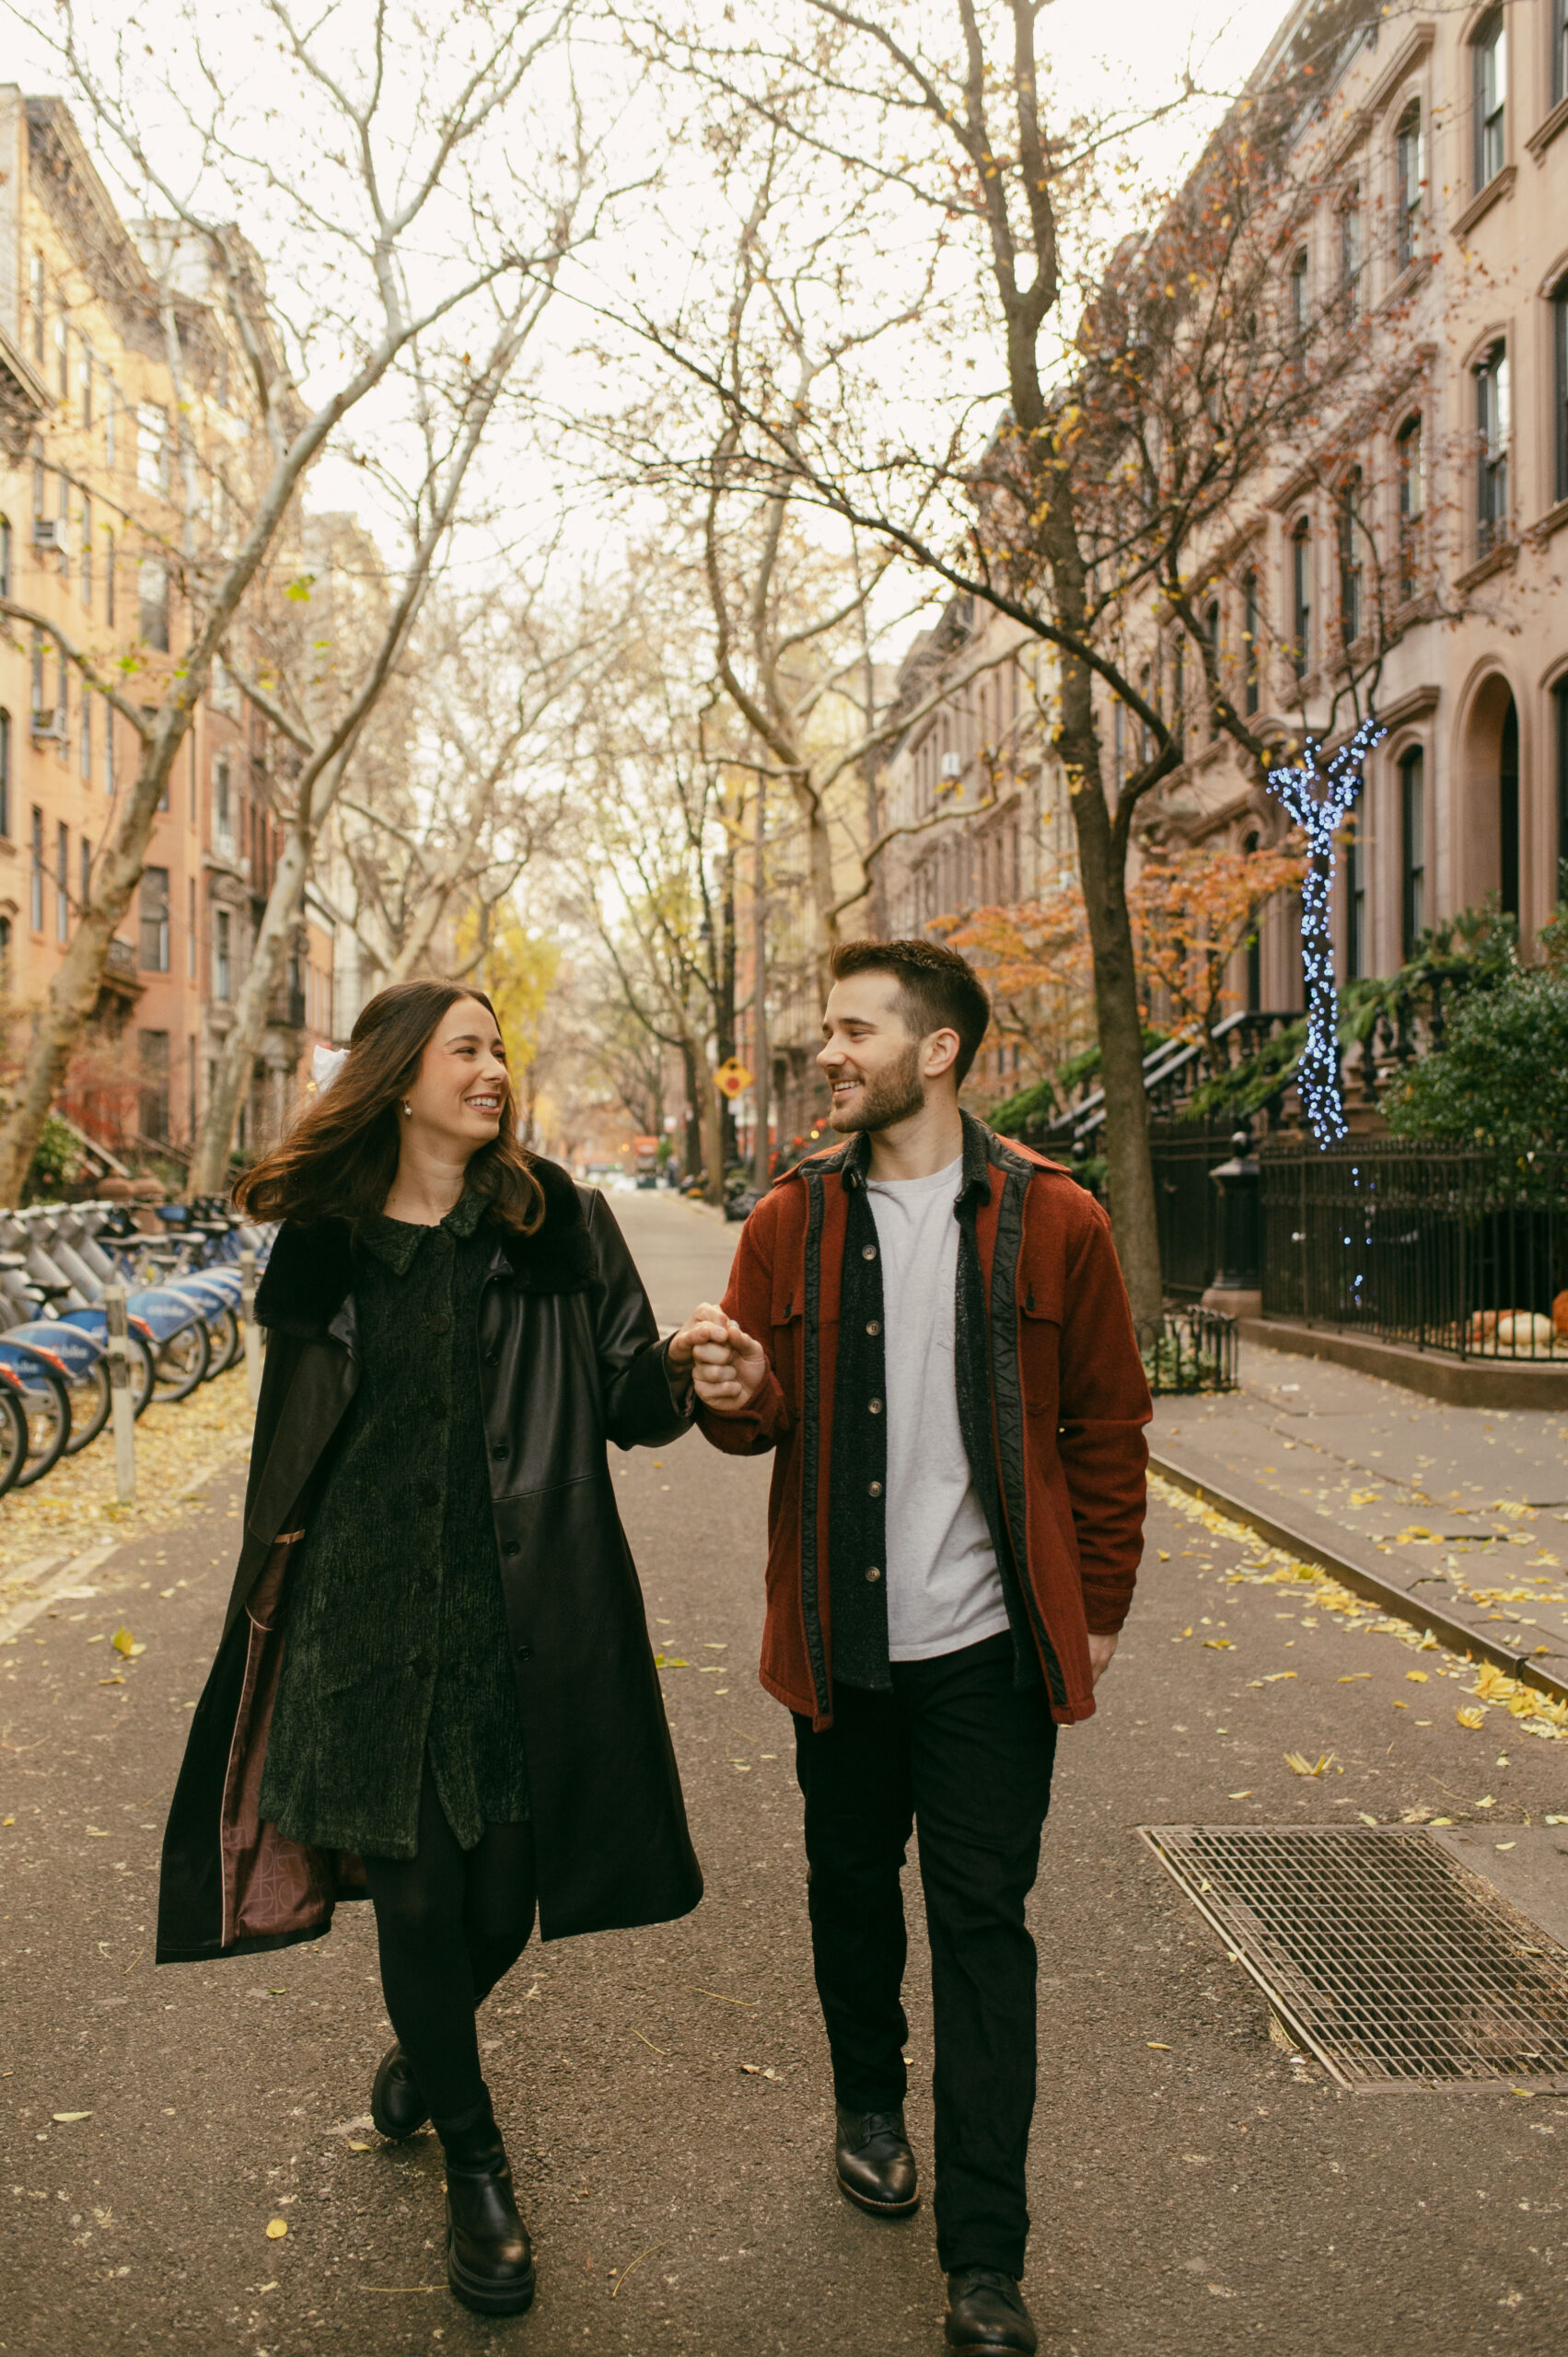 A couple walking in Greenwich Village